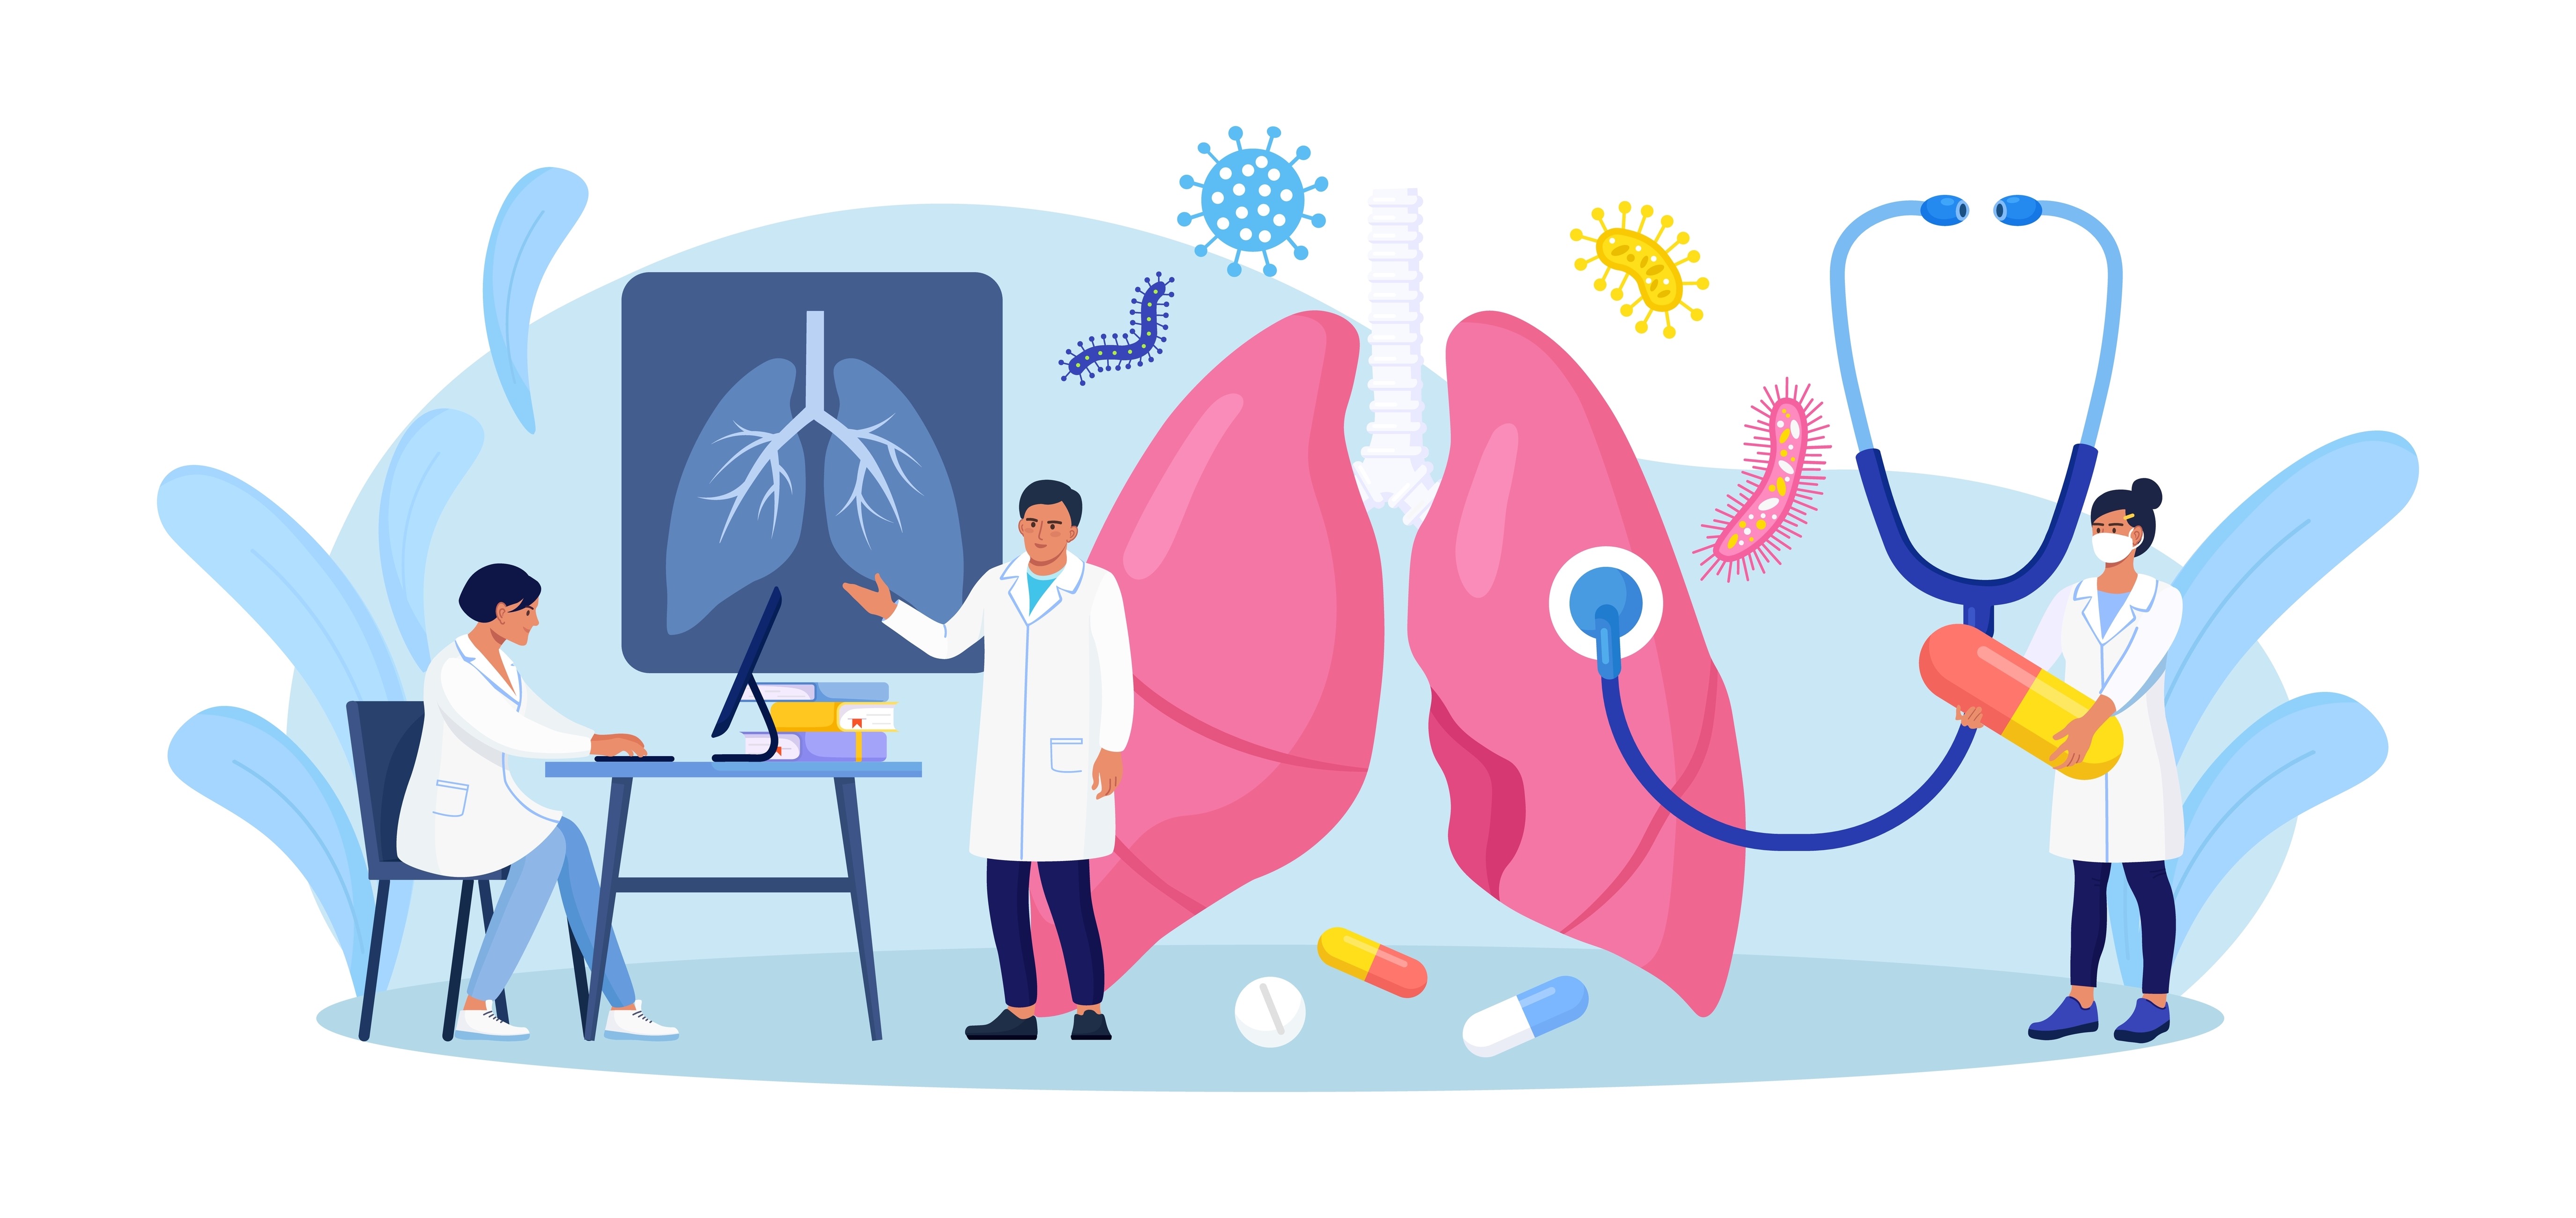 Das Bild zeigt eine Illustration zum Thema Untersuchung bei einem Lungenarzt